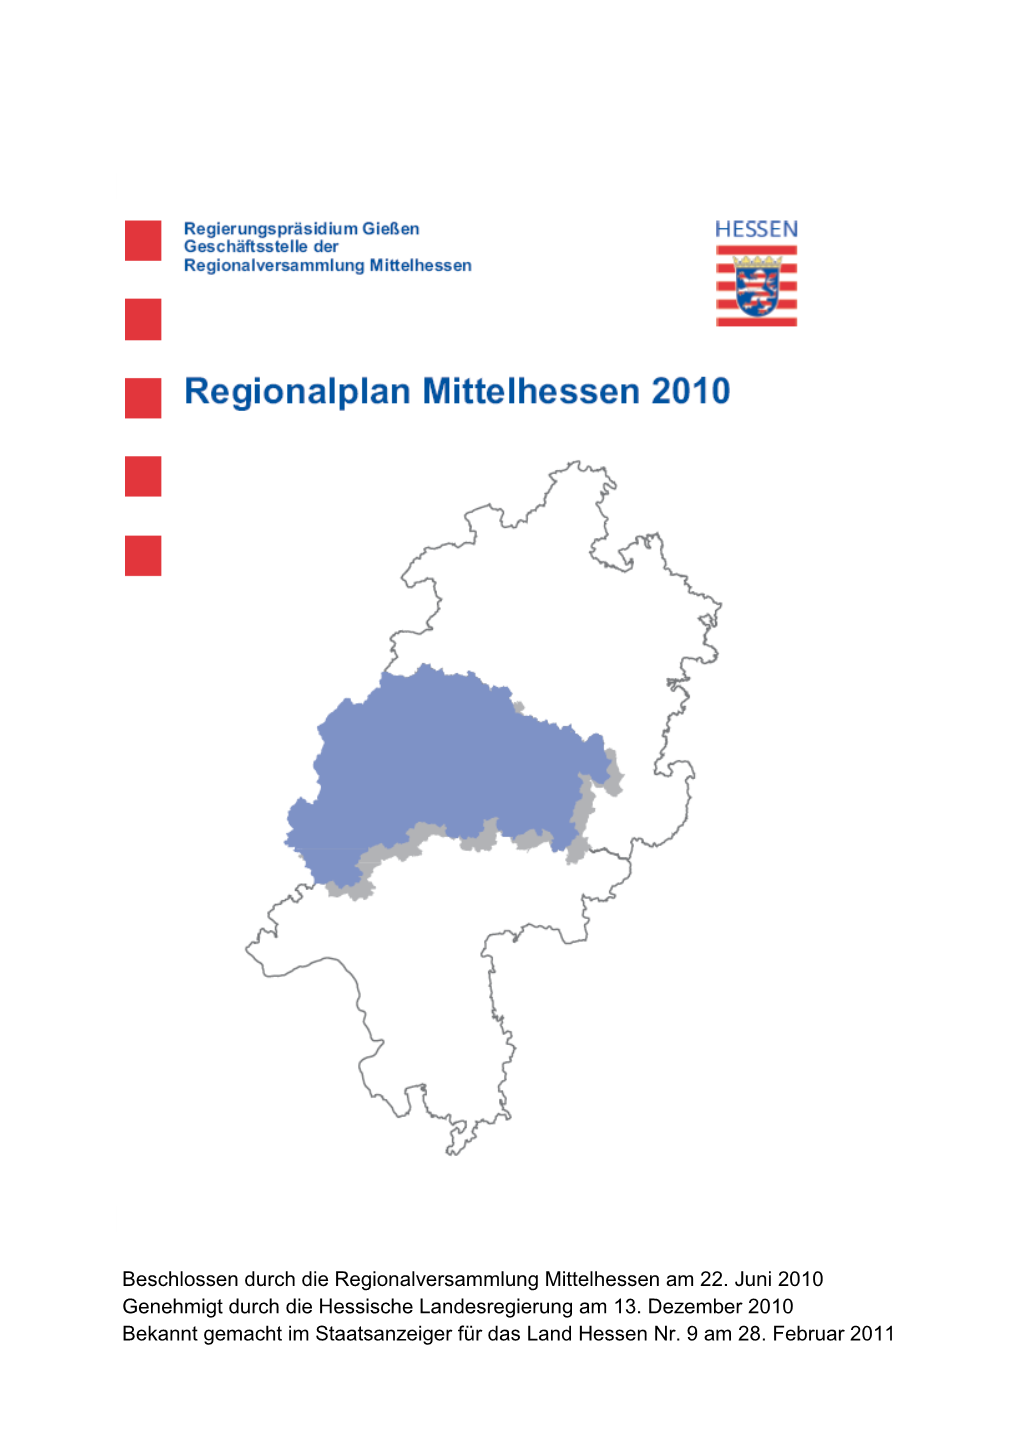 Beschlossen Durch Die Regionalversammlung Mittelhessen Am 22. Juni 2010 Genehmigt Durch Die Hessische Landesregierung Am 13